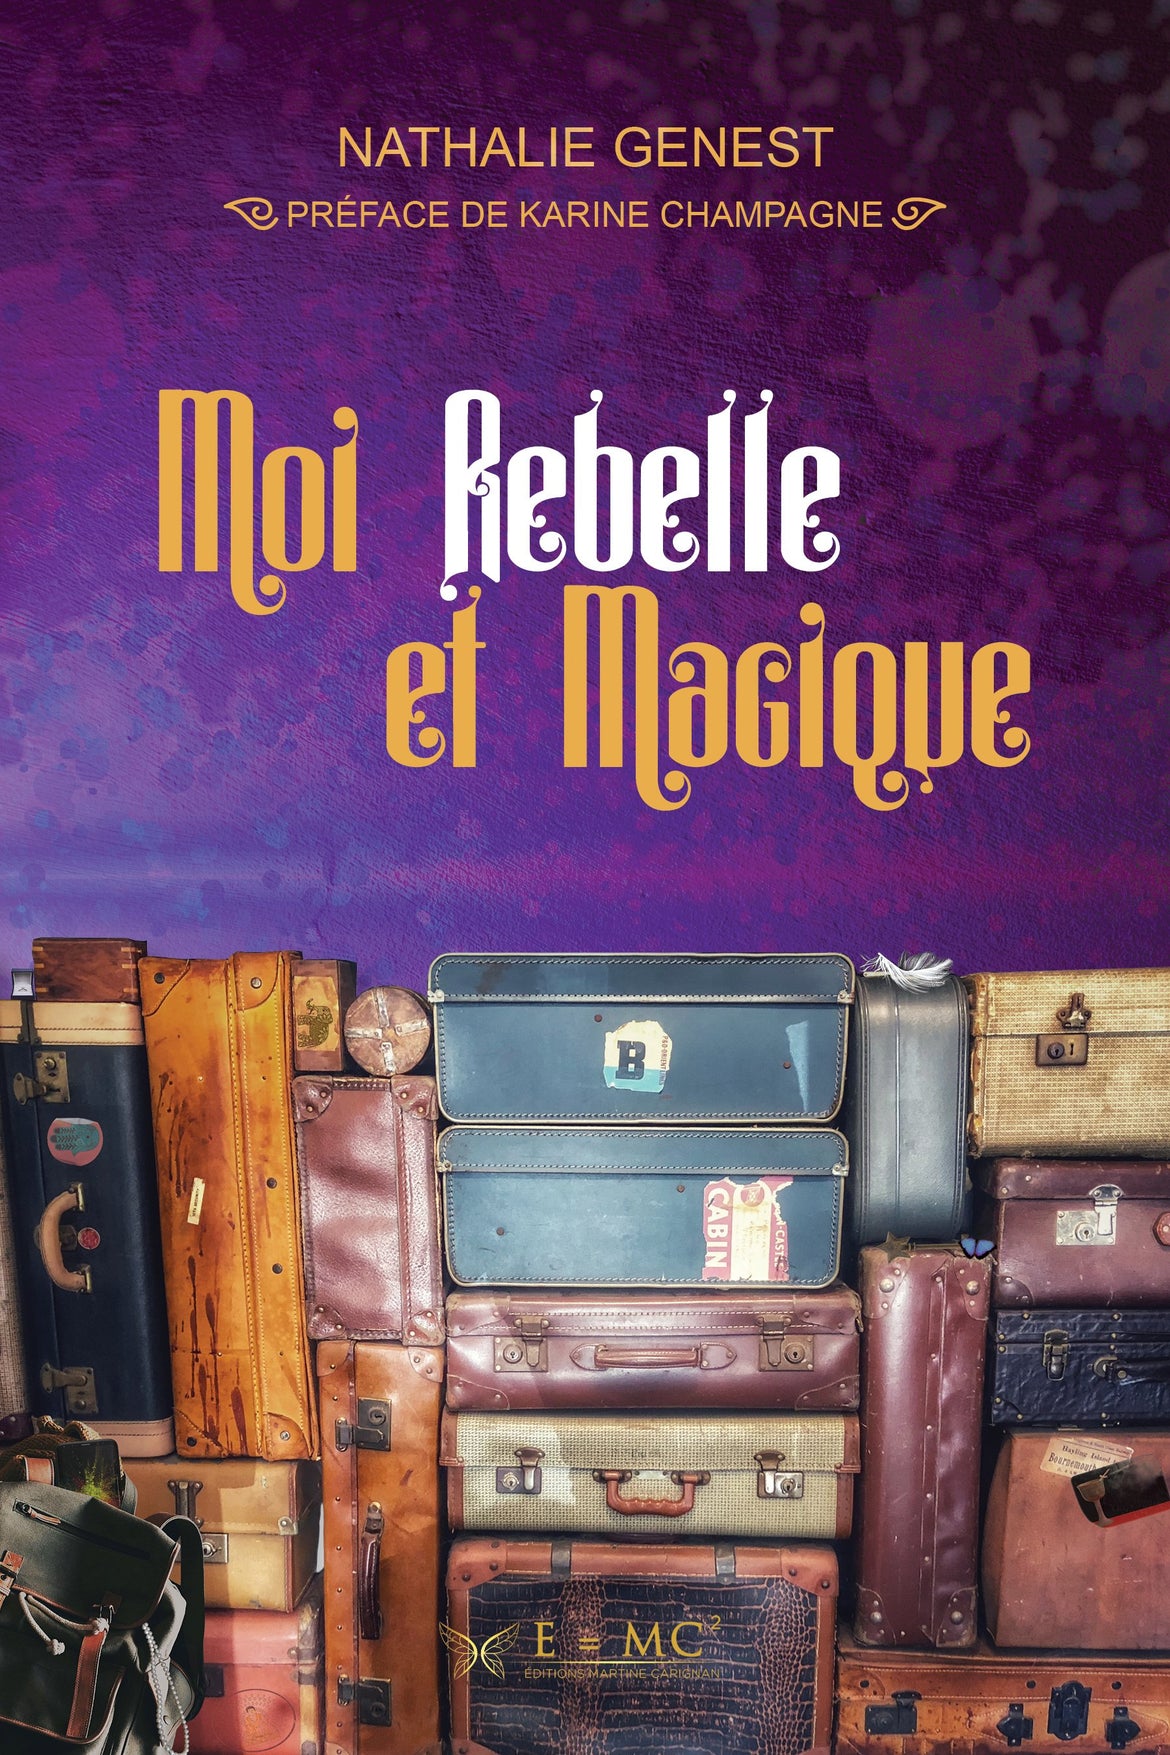 Moi Rebelle et Magique vu par Karine Champagne